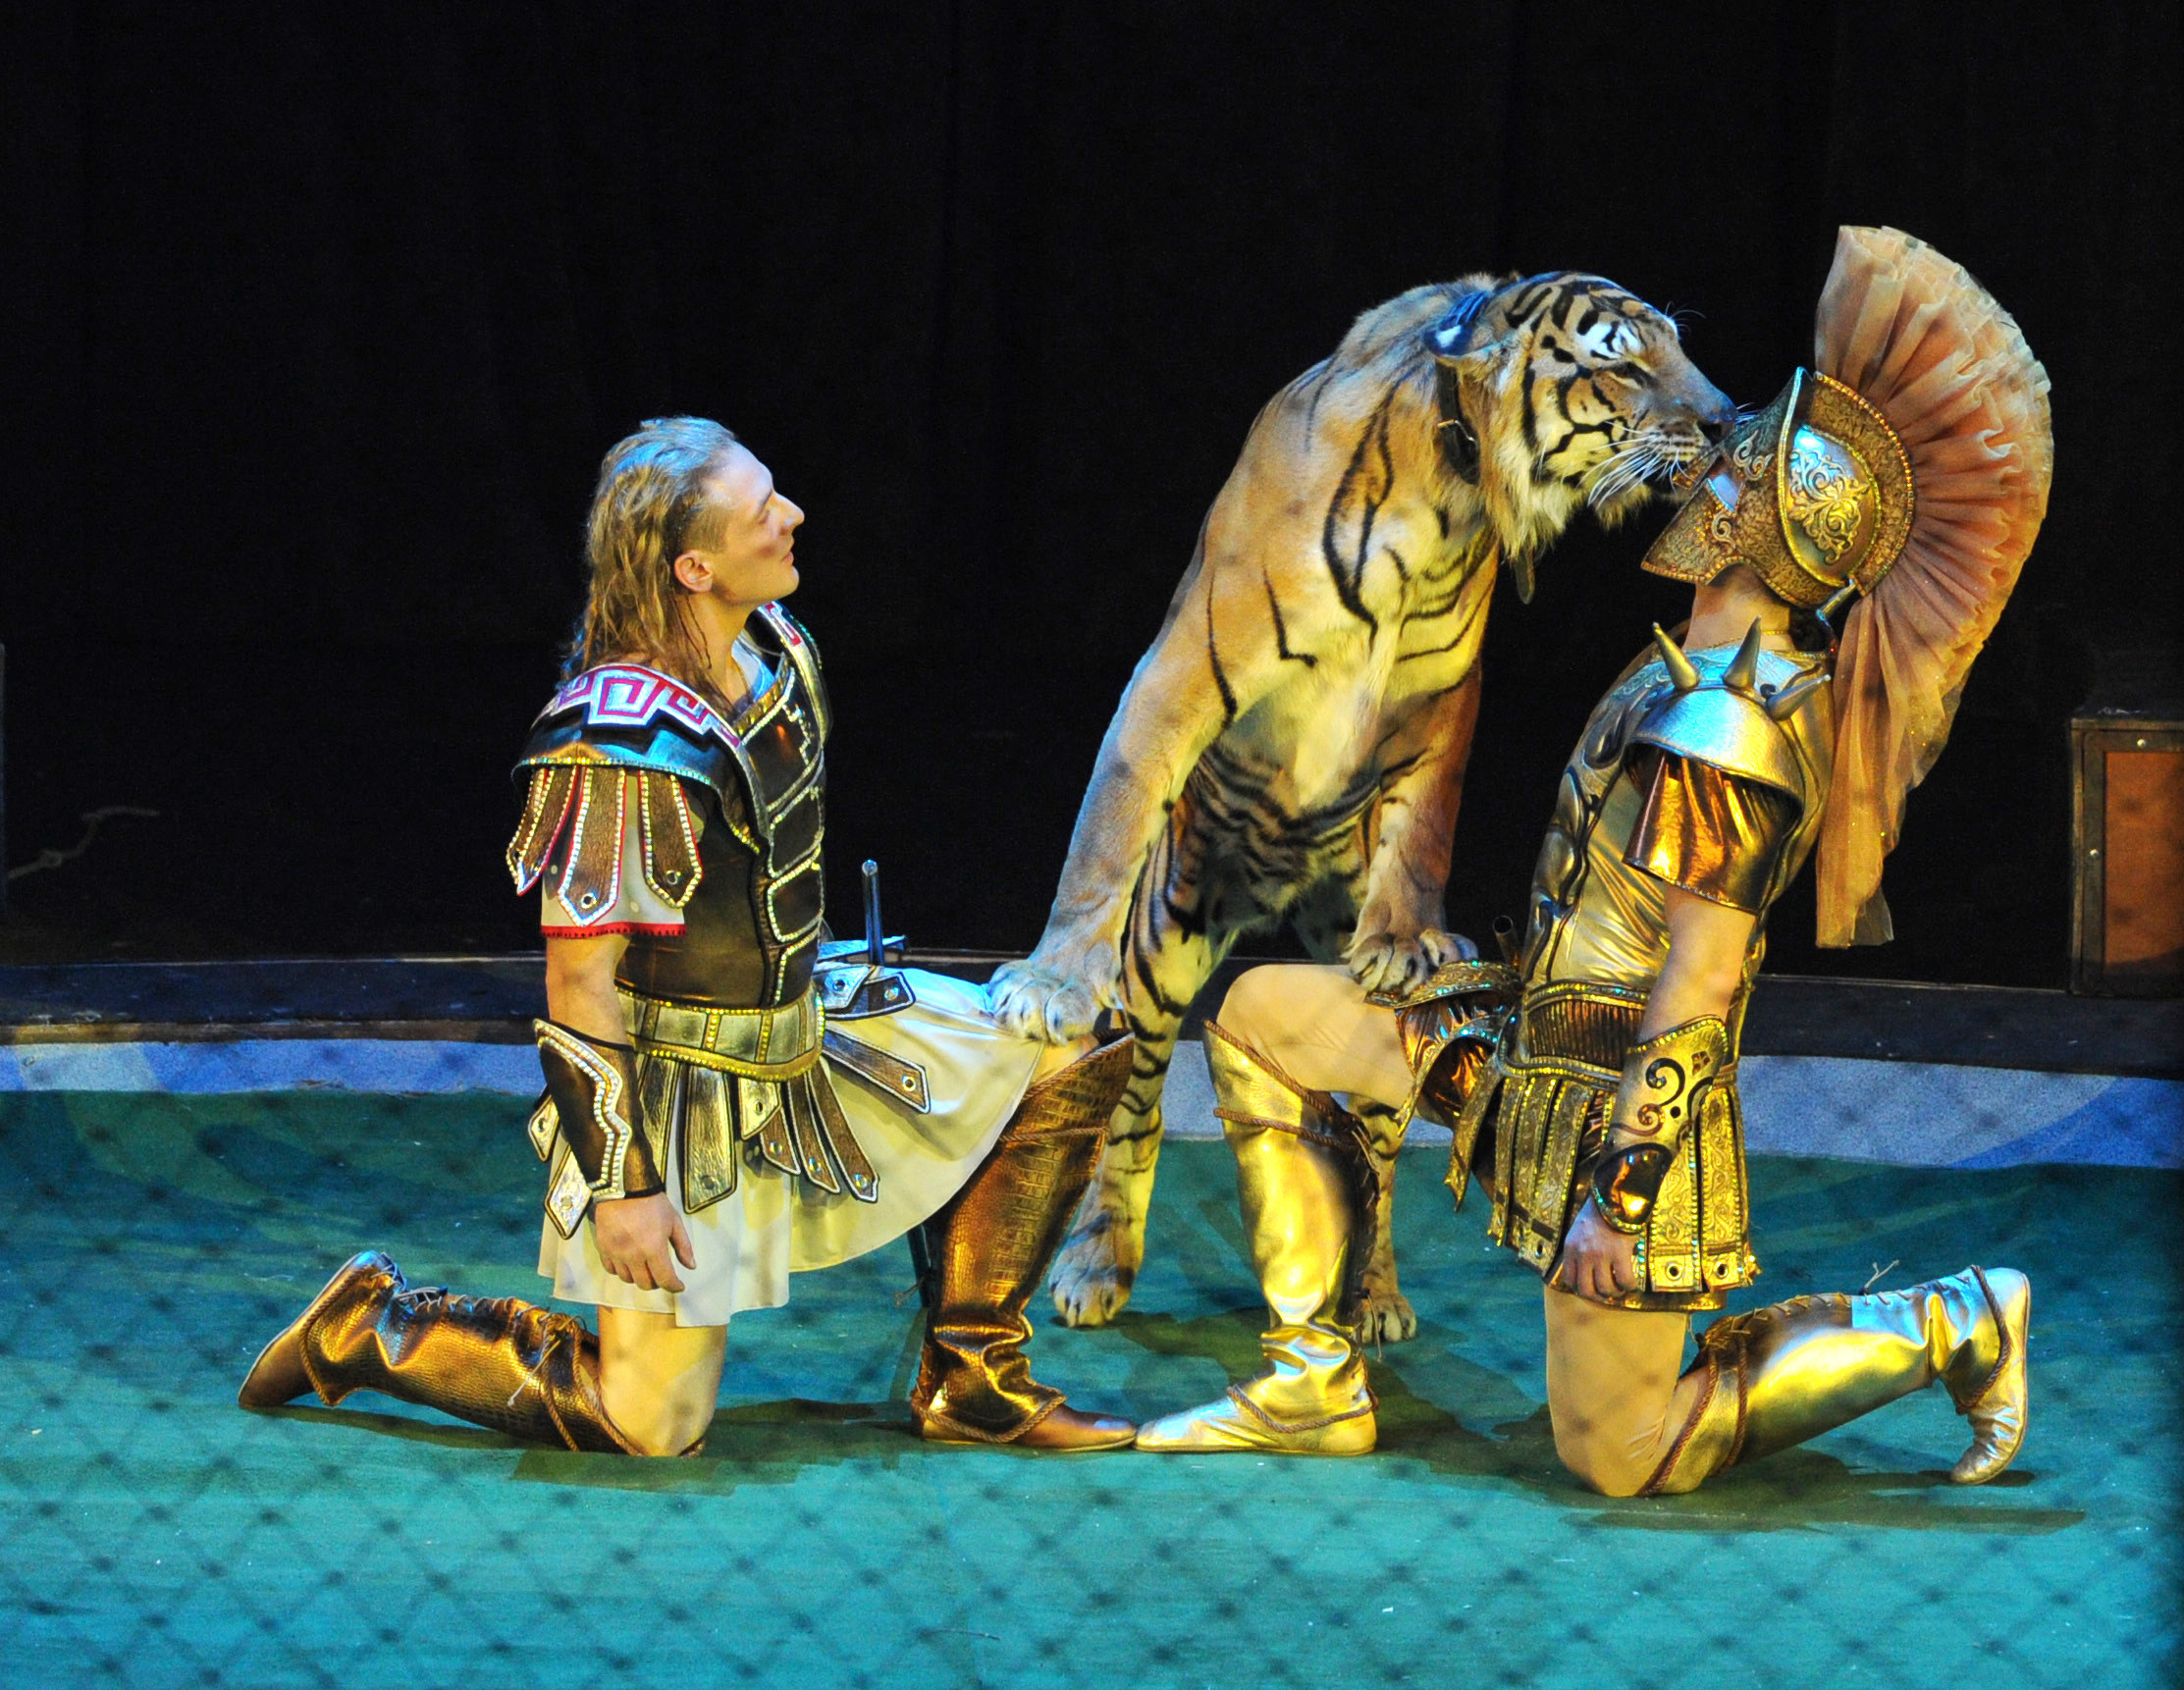 Аскольд и Эдгард Запашные (слева направо) выступают с тиграми во время циркового шоу "Легенда братьев Запашных". Фото: © РИА Новости /Илья Питалев